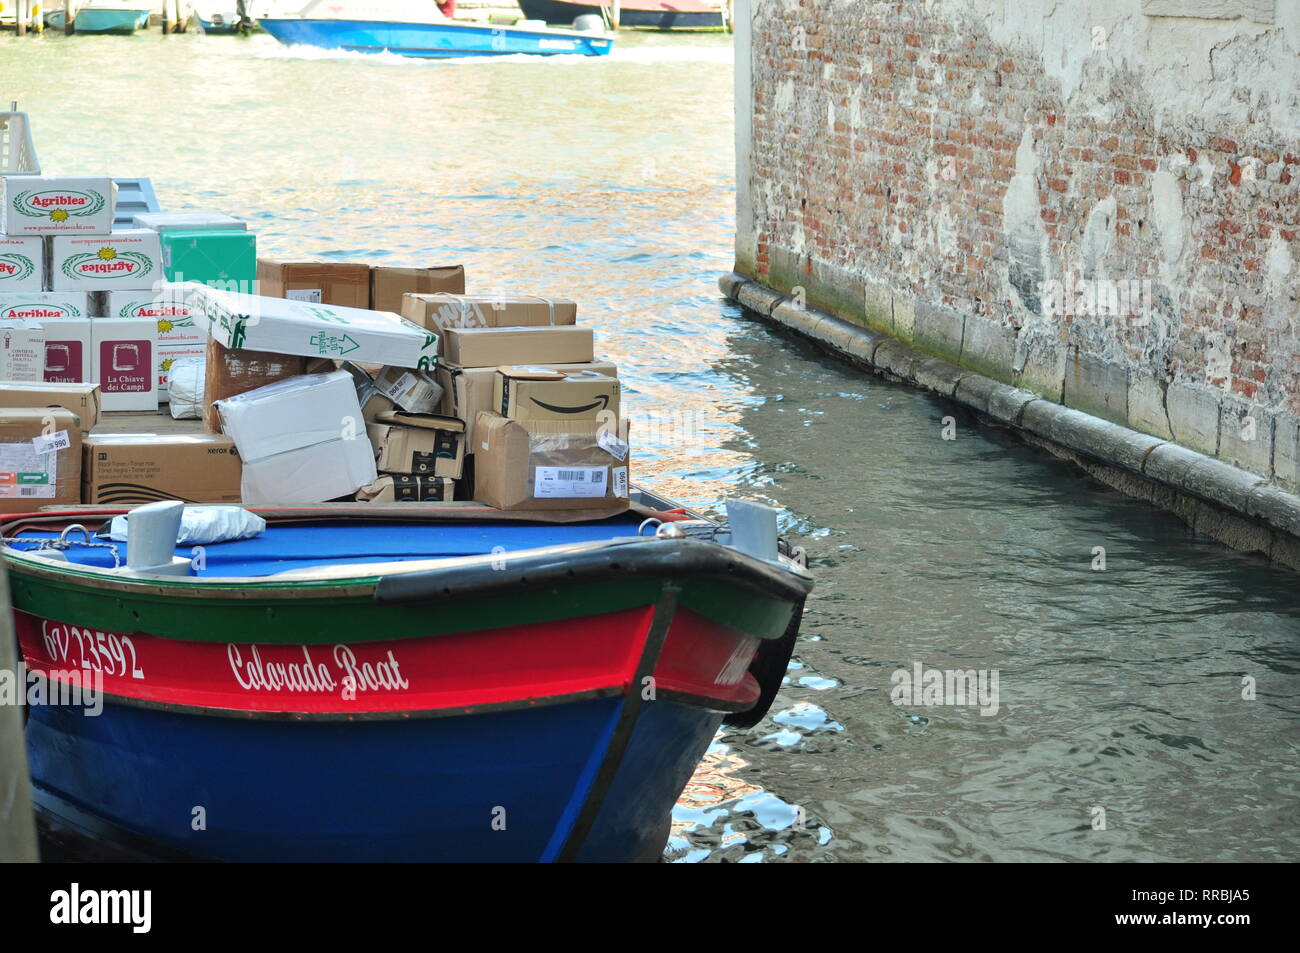 La consegna di pacchi a Venezia Foto Stock